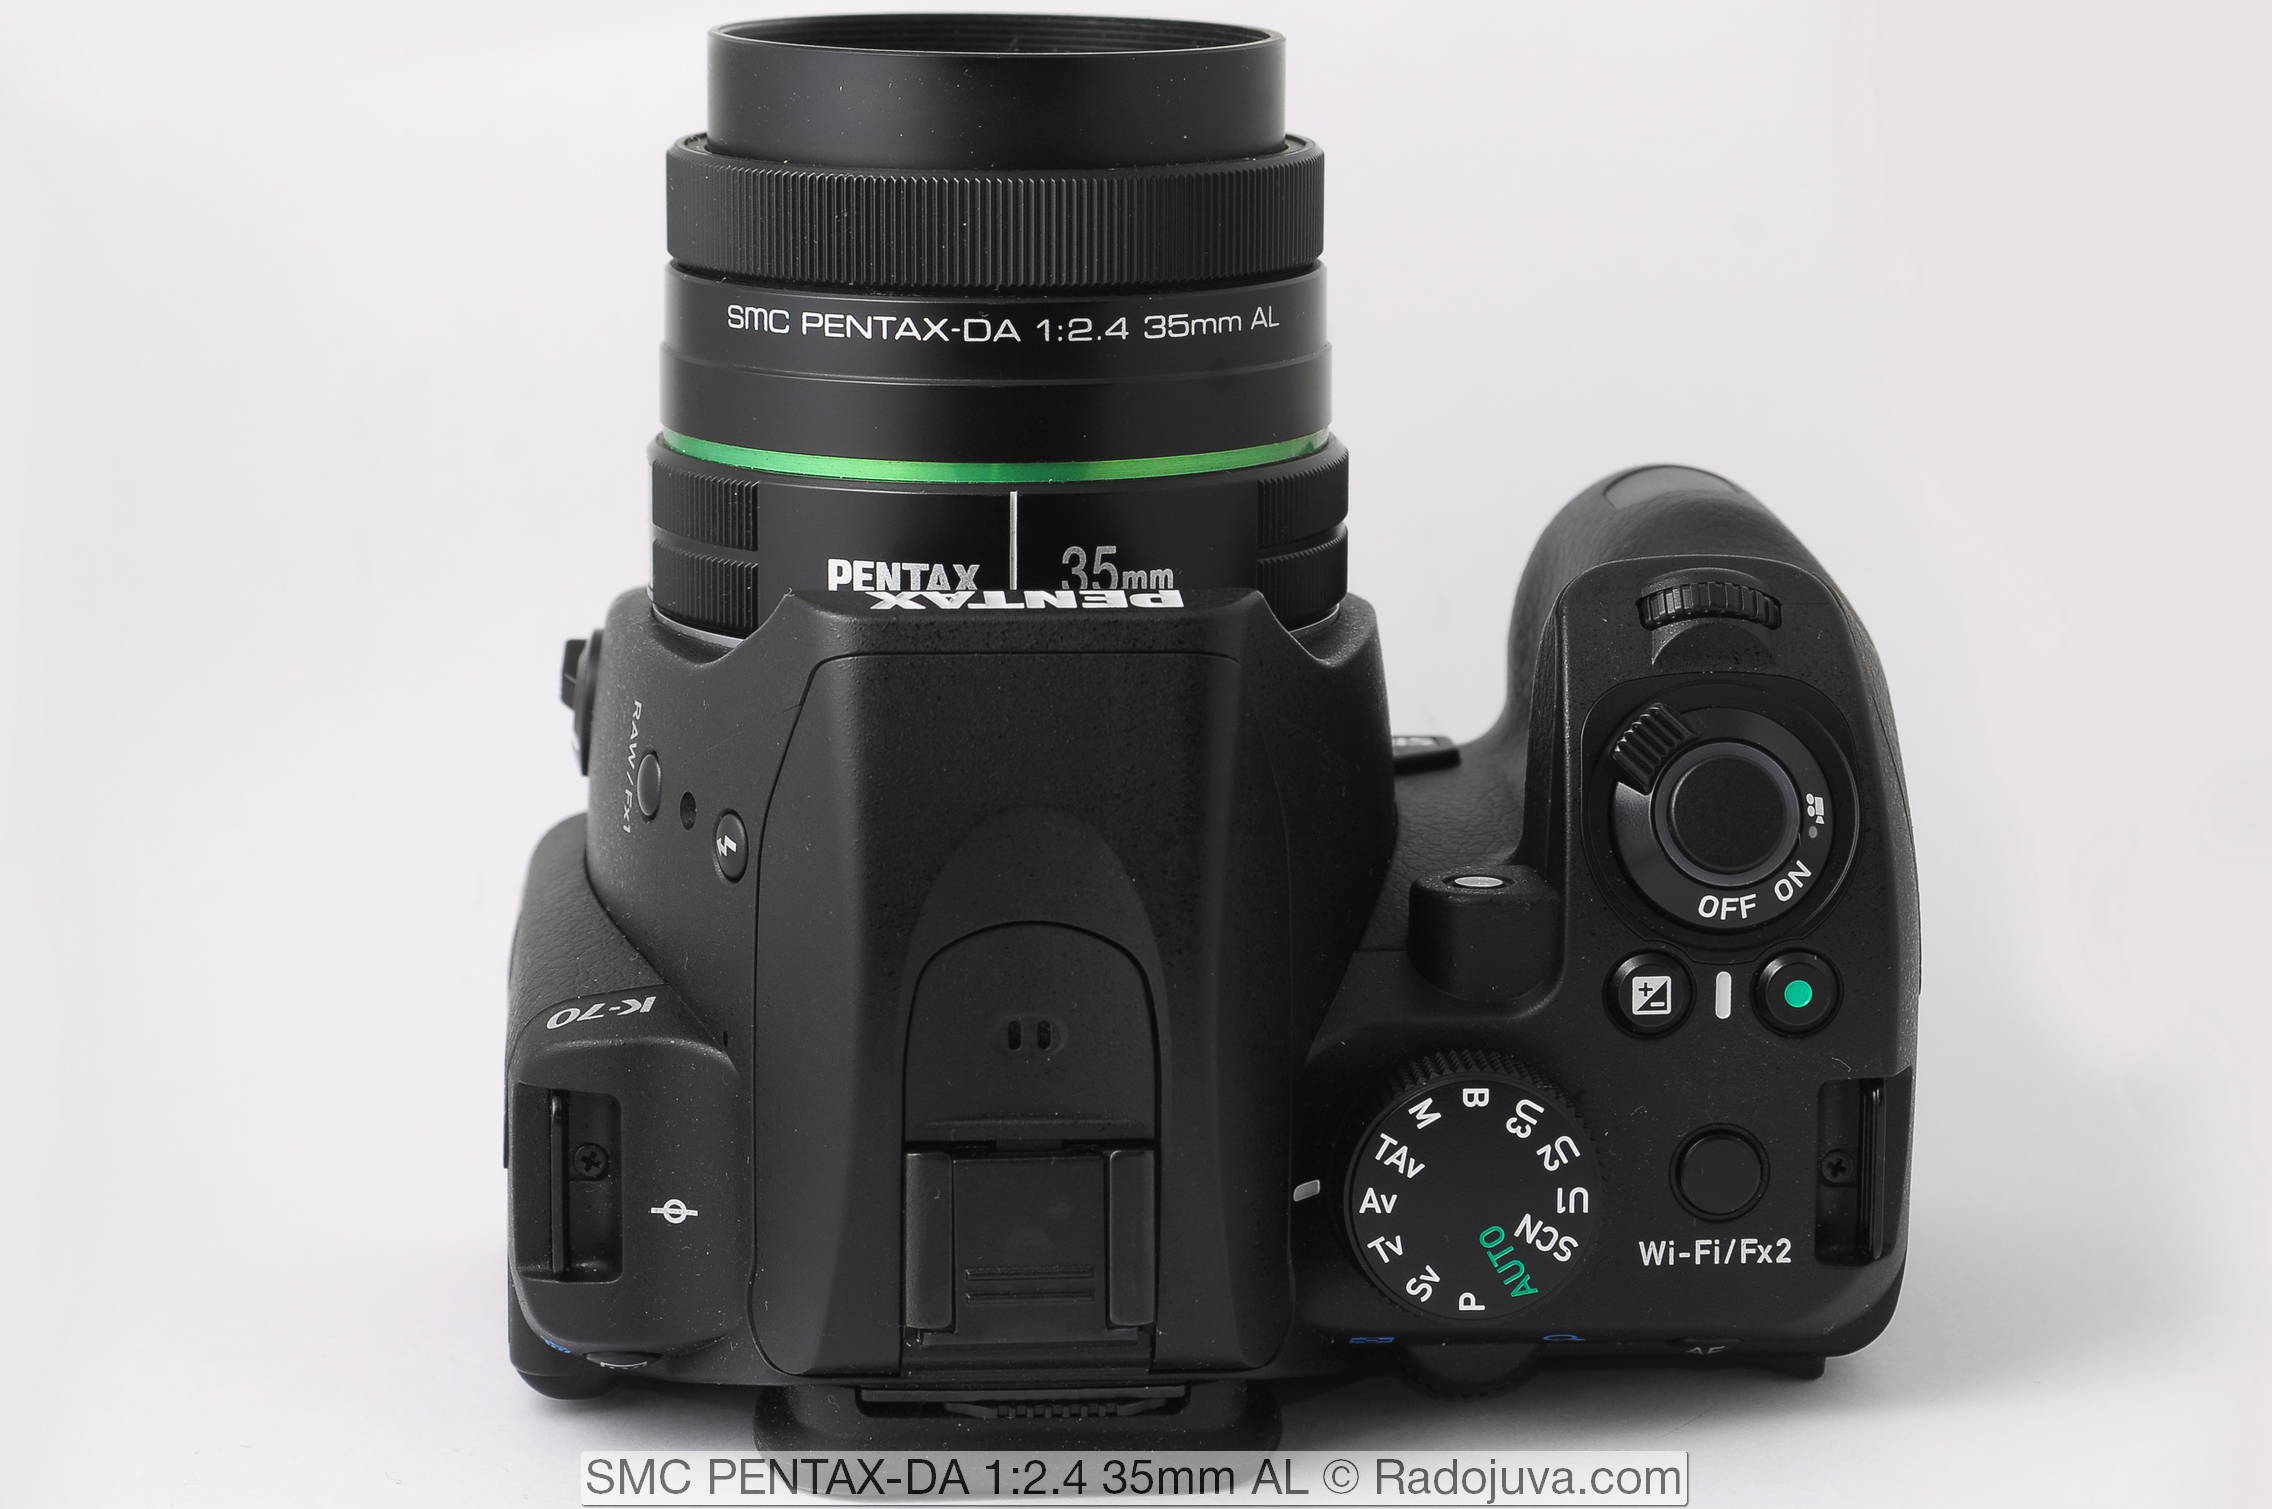 SMC PENTAX-DA 1:2.4 35mm AL